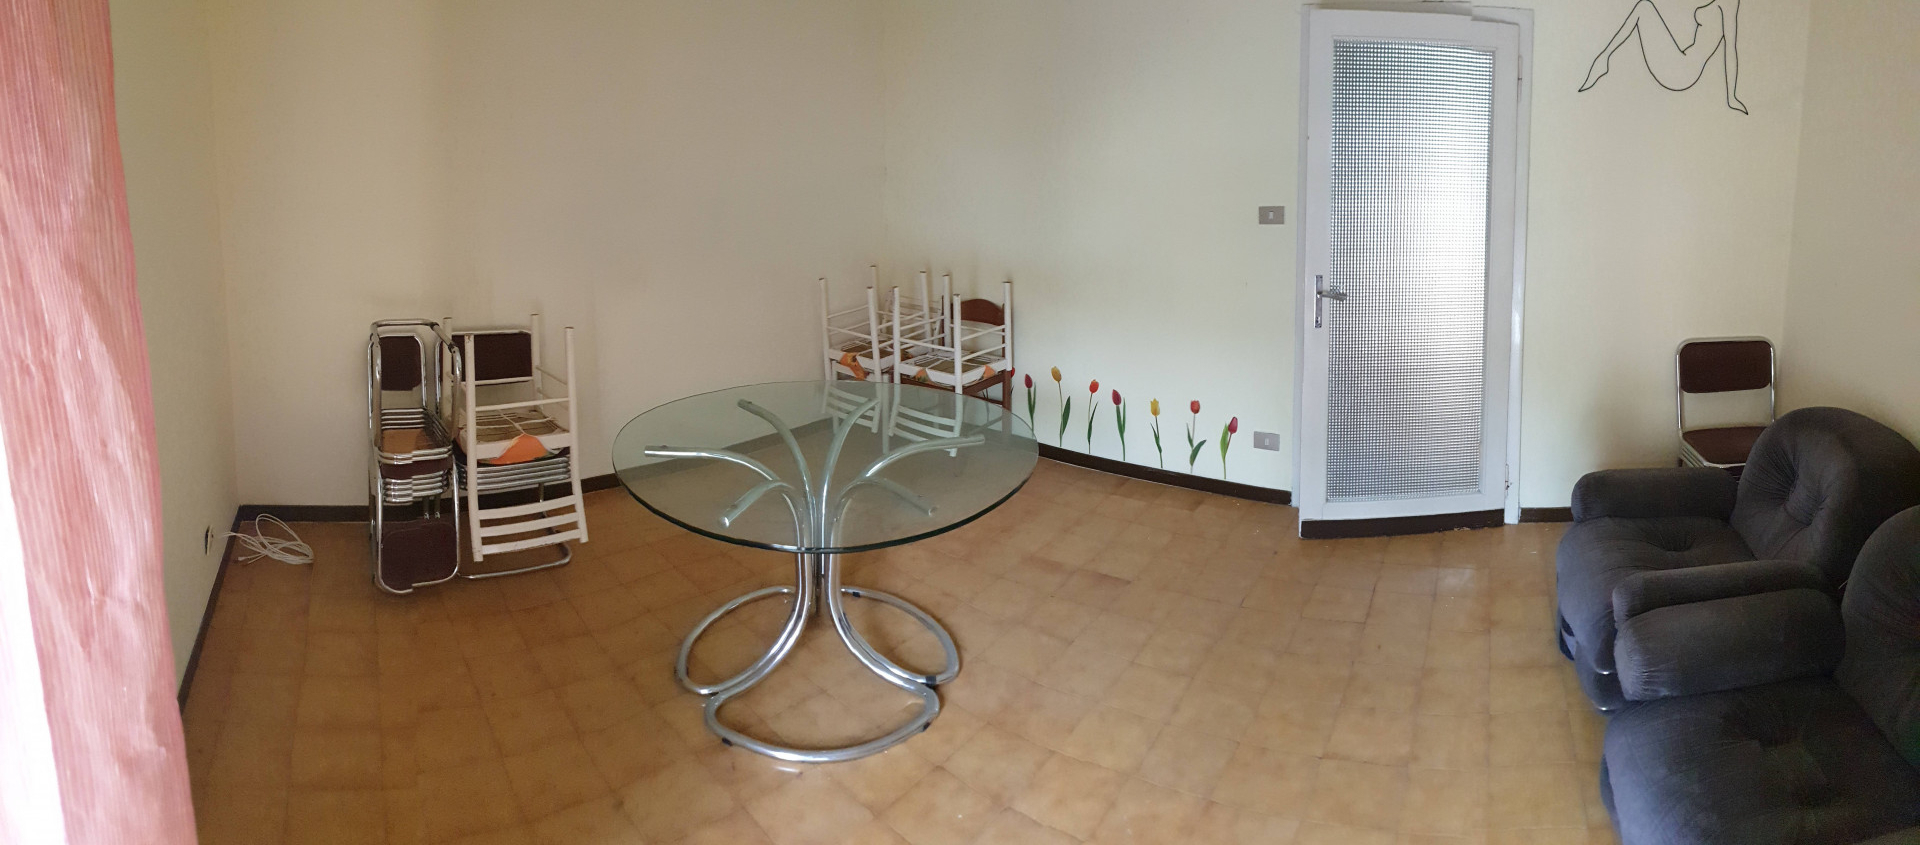 Appartamento da ristrutturare, Ascoli Piceno tofare